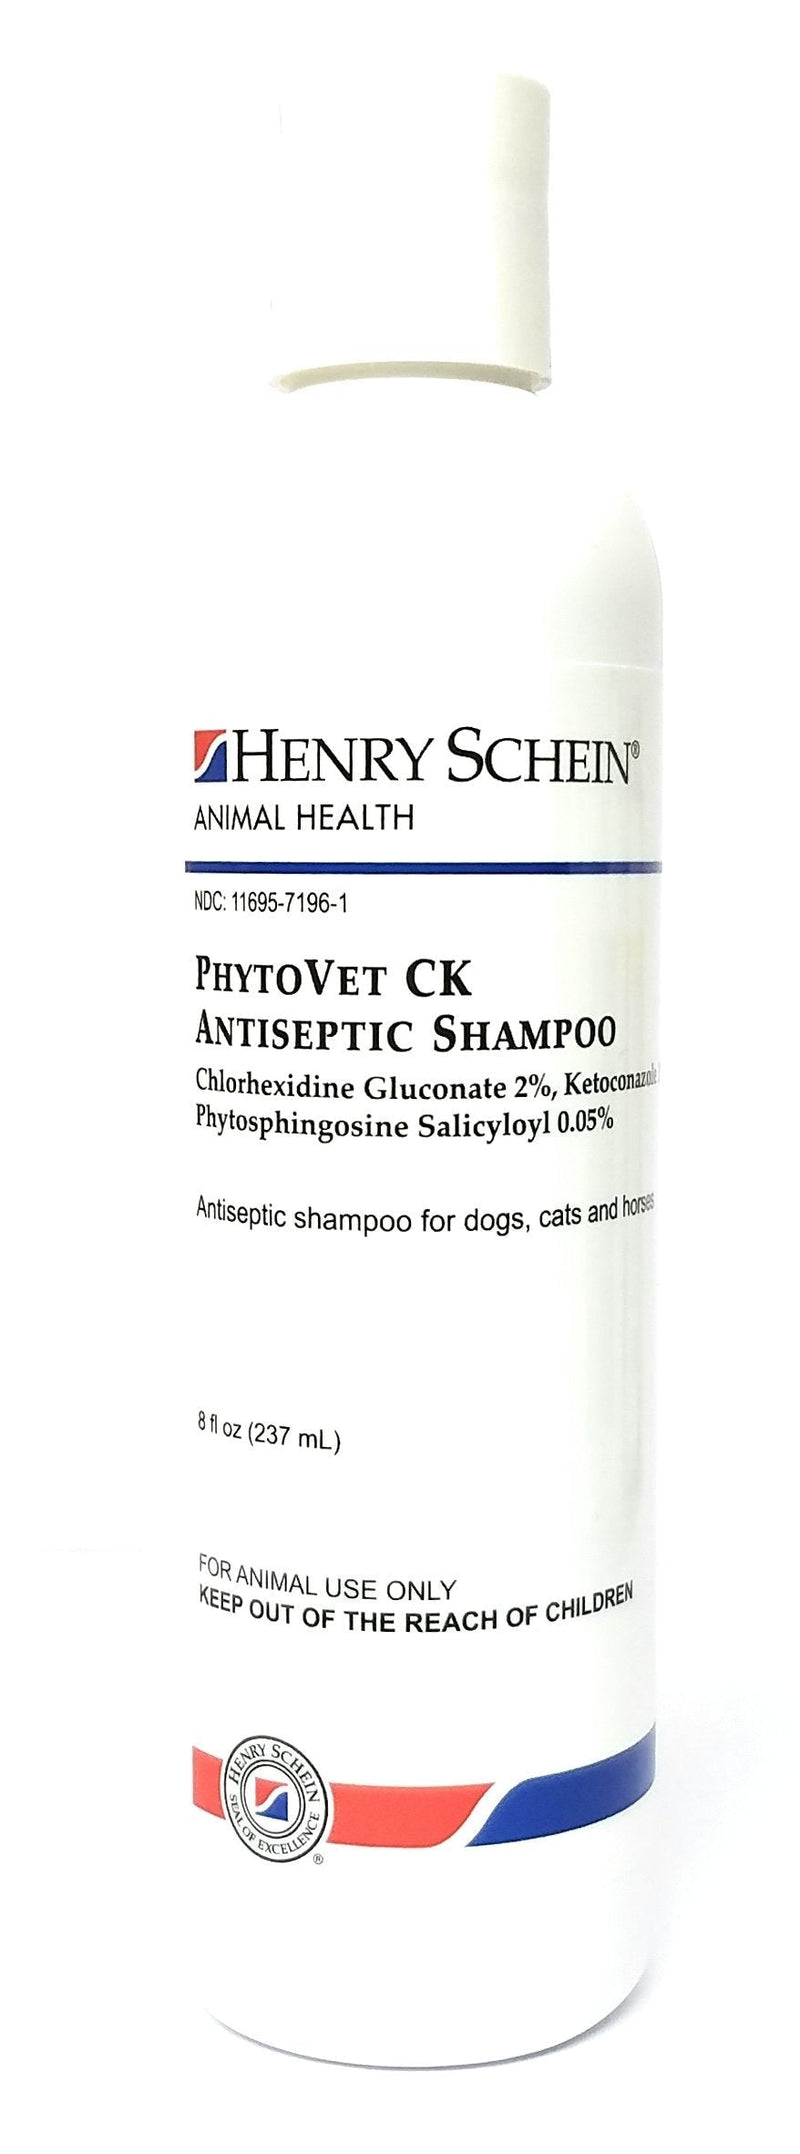 [Australia] - Henry Schein PhytoVet CK Shampoo 8 oz 